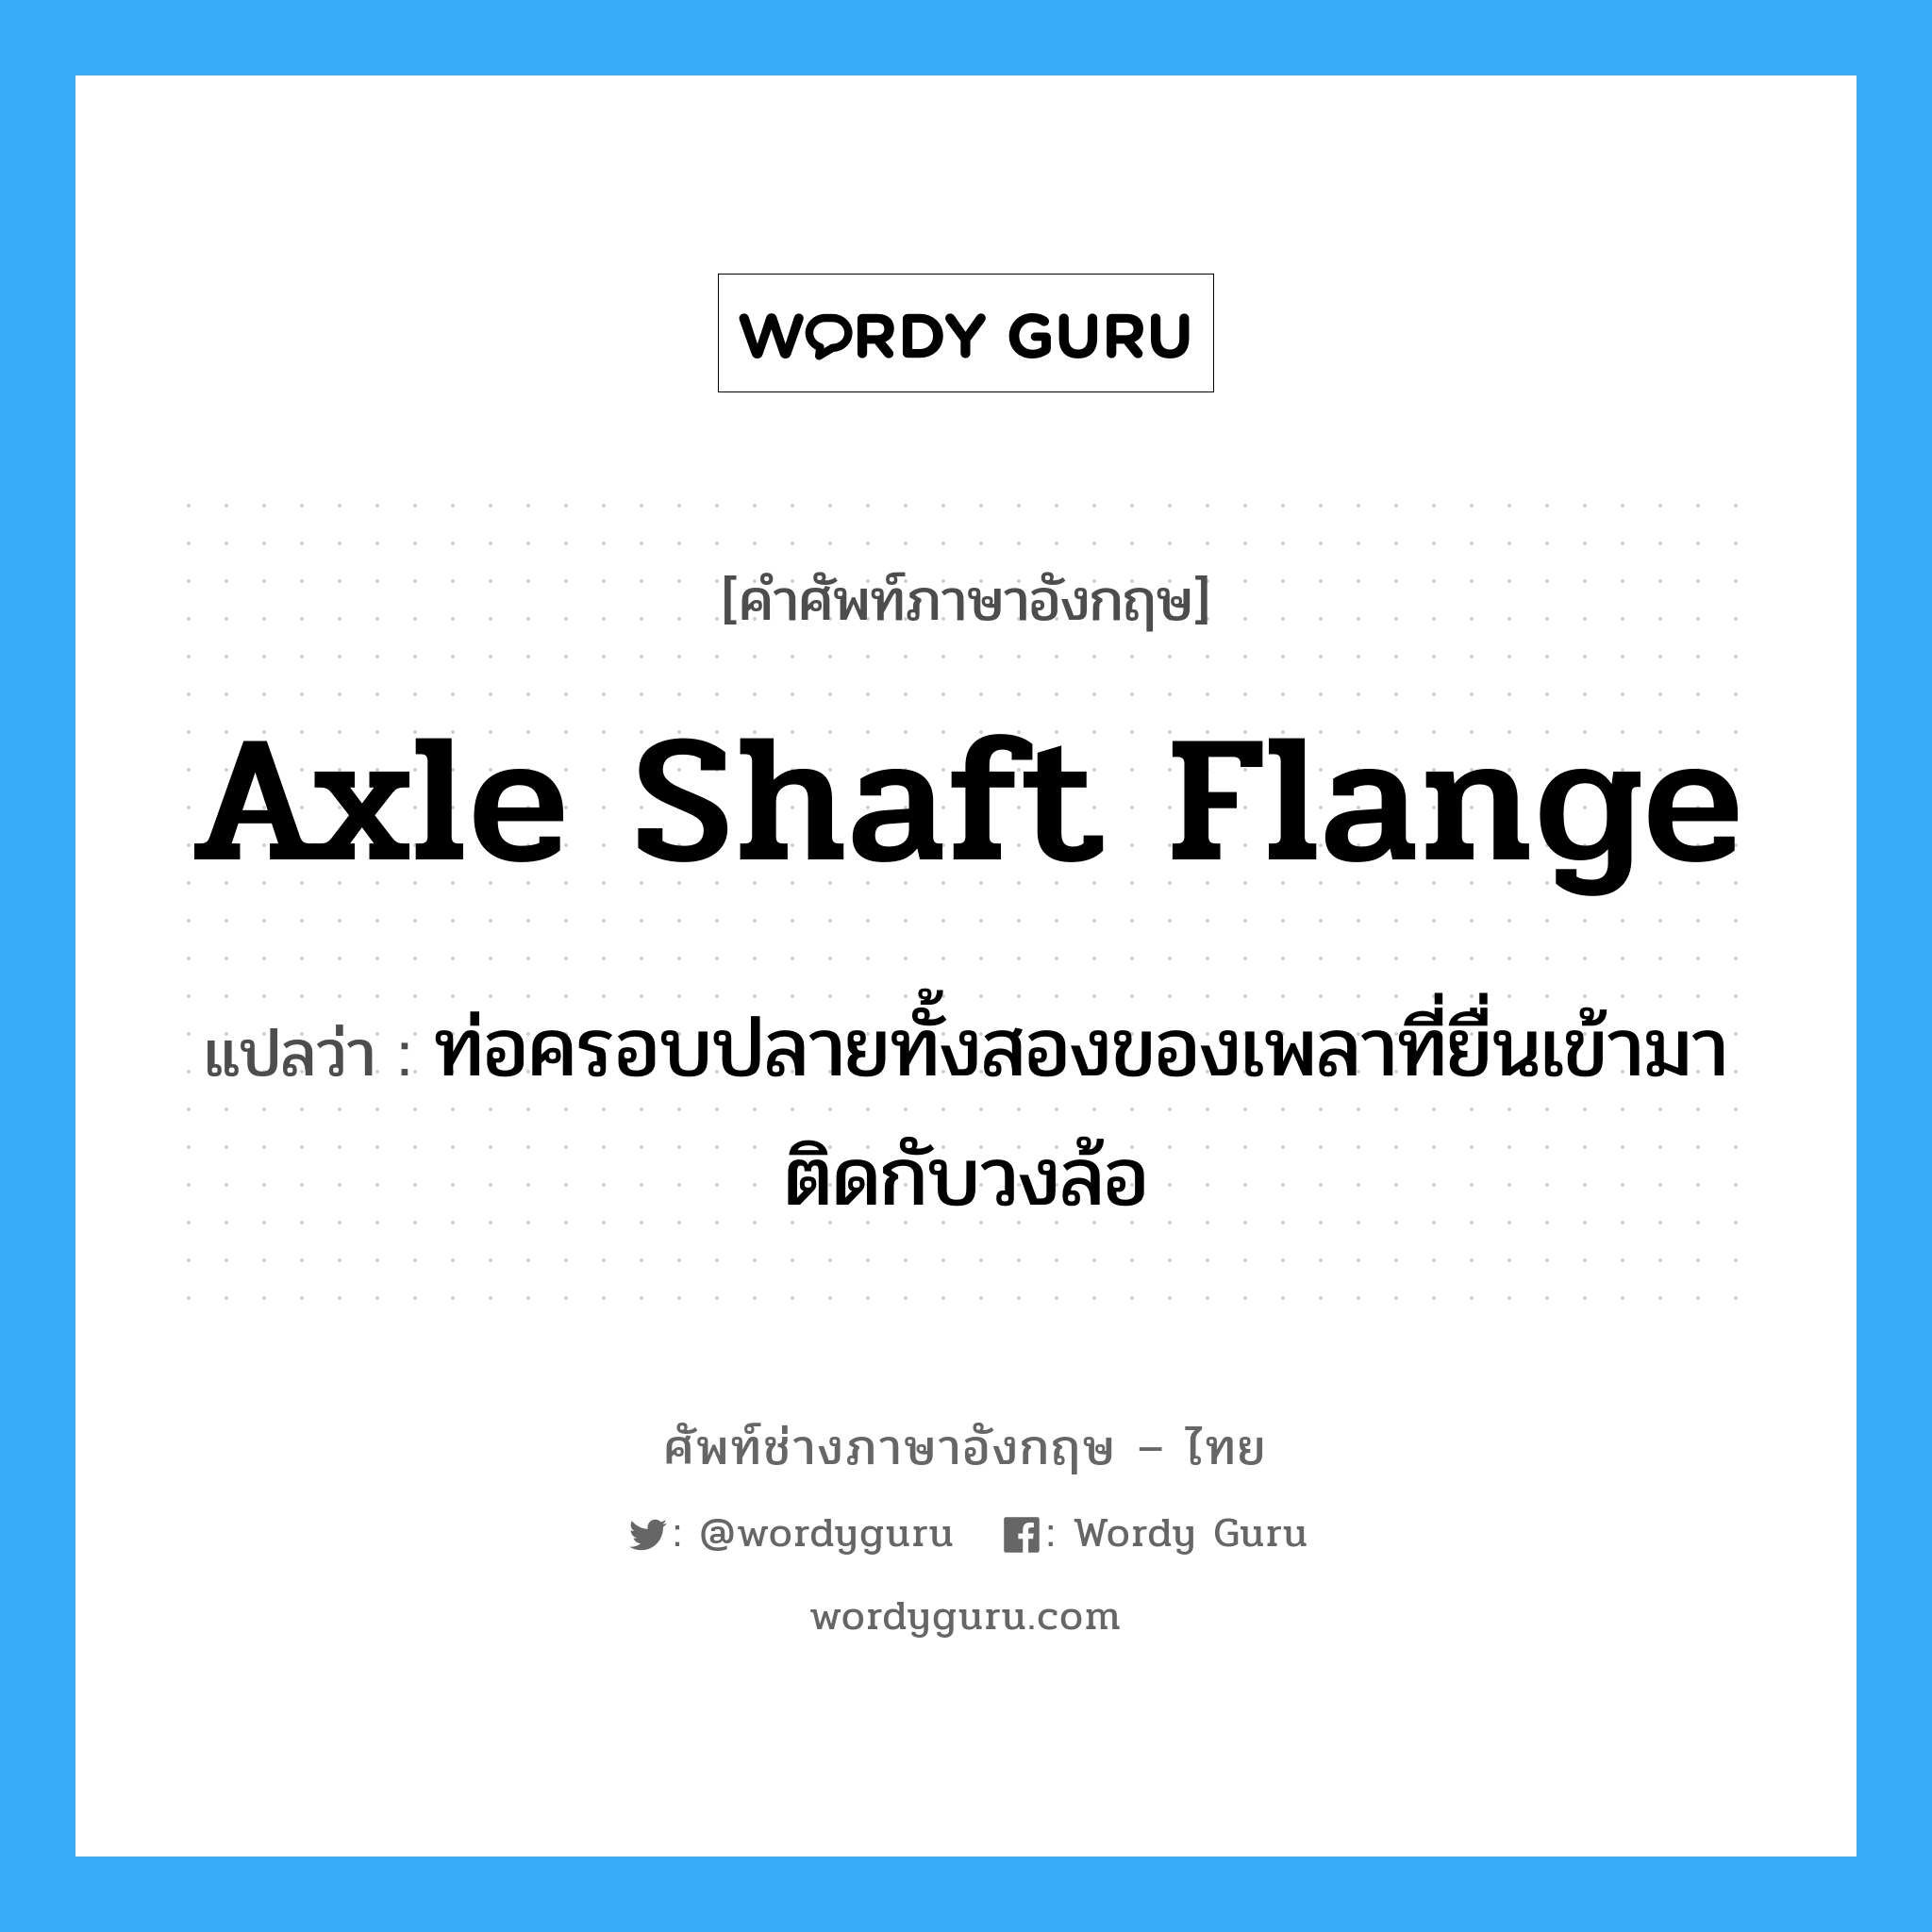 axle shaft flange แปลว่า?, คำศัพท์ช่างภาษาอังกฤษ - ไทย axle shaft flange คำศัพท์ภาษาอังกฤษ axle shaft flange แปลว่า ท่อครอบปลายทั้งสองของเพลาที่ยื่นเข้ามาติดกับวงล้อ